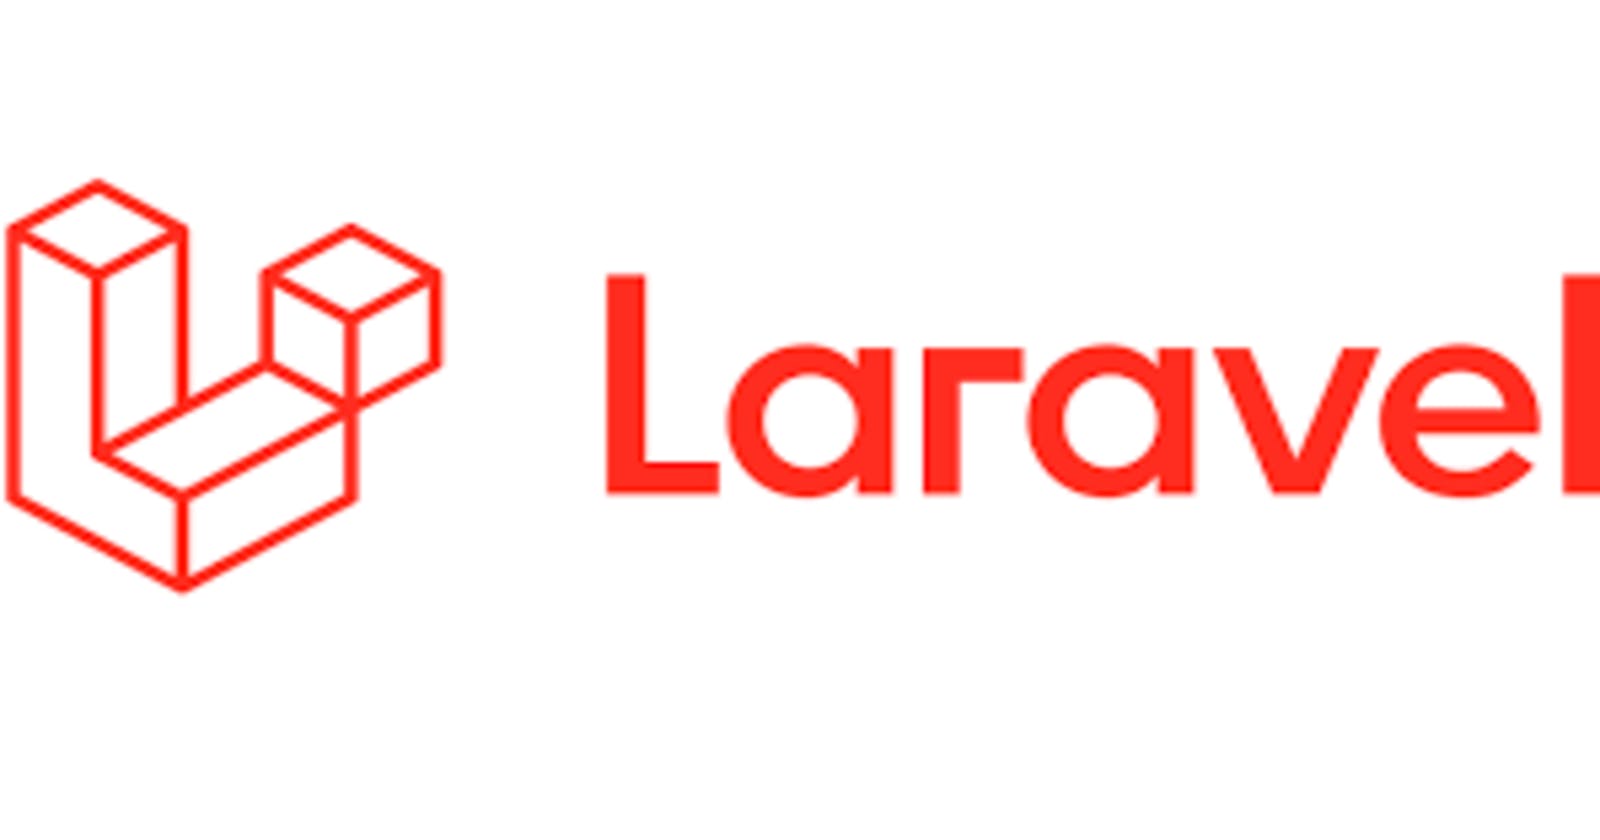 Implementing Basic Authorization With Laravel